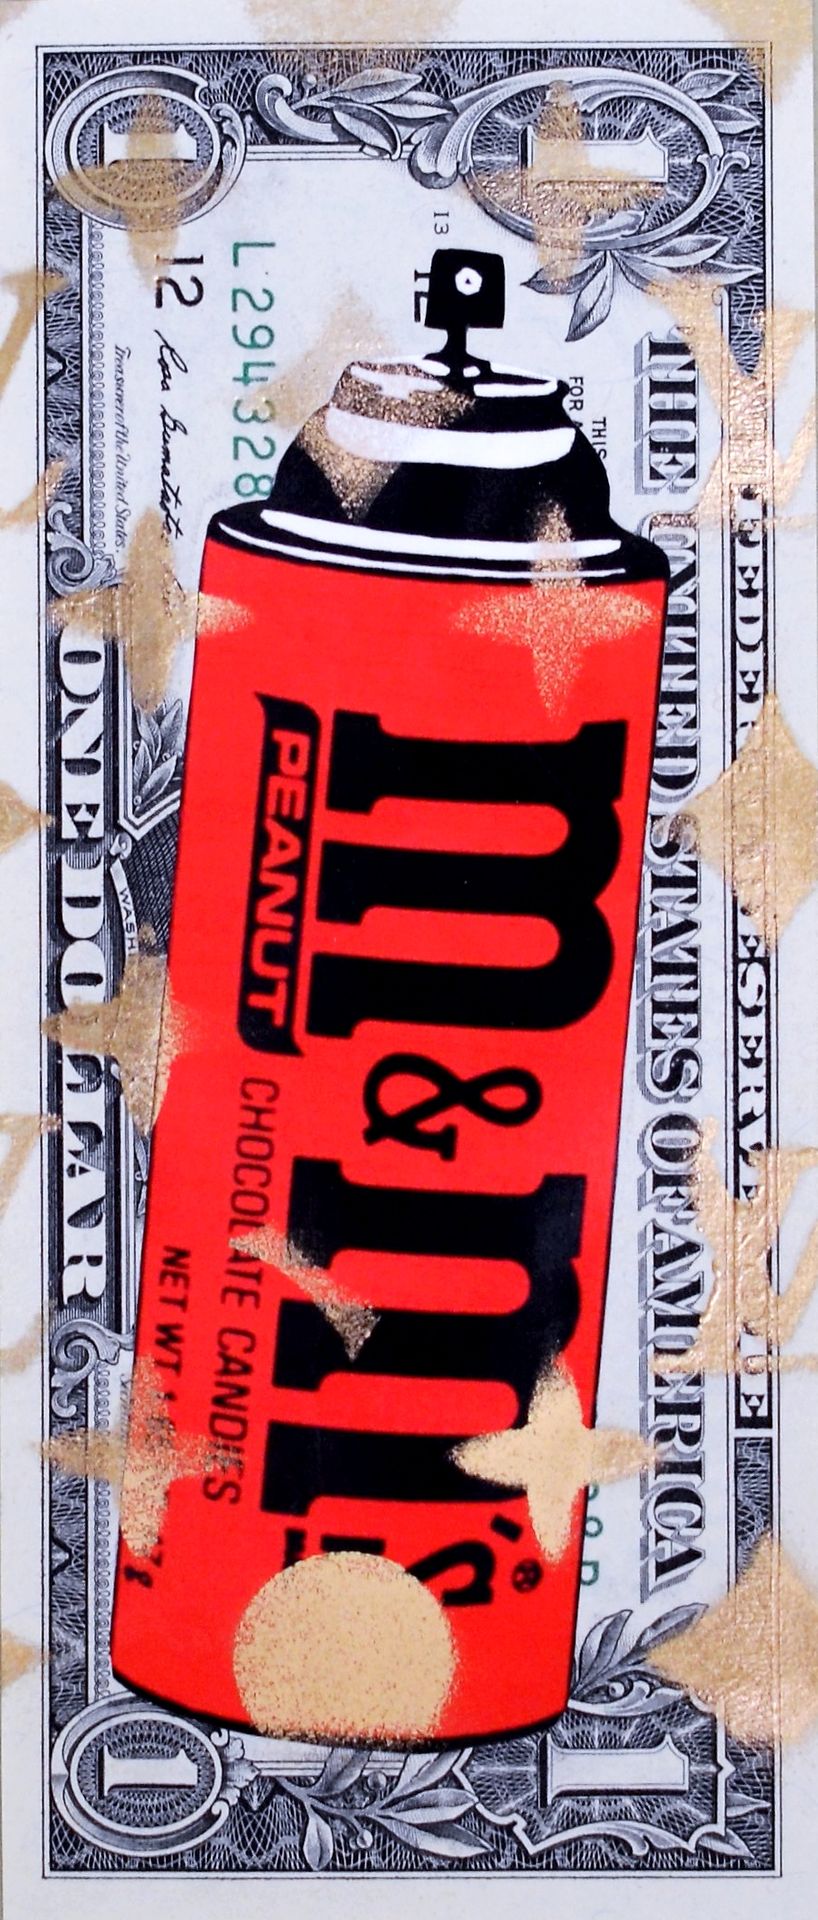 Death NYC Tod NYC

M&M Spray 2013

Collage und Mischtechnik auf Banknote

Einzig&hellip;